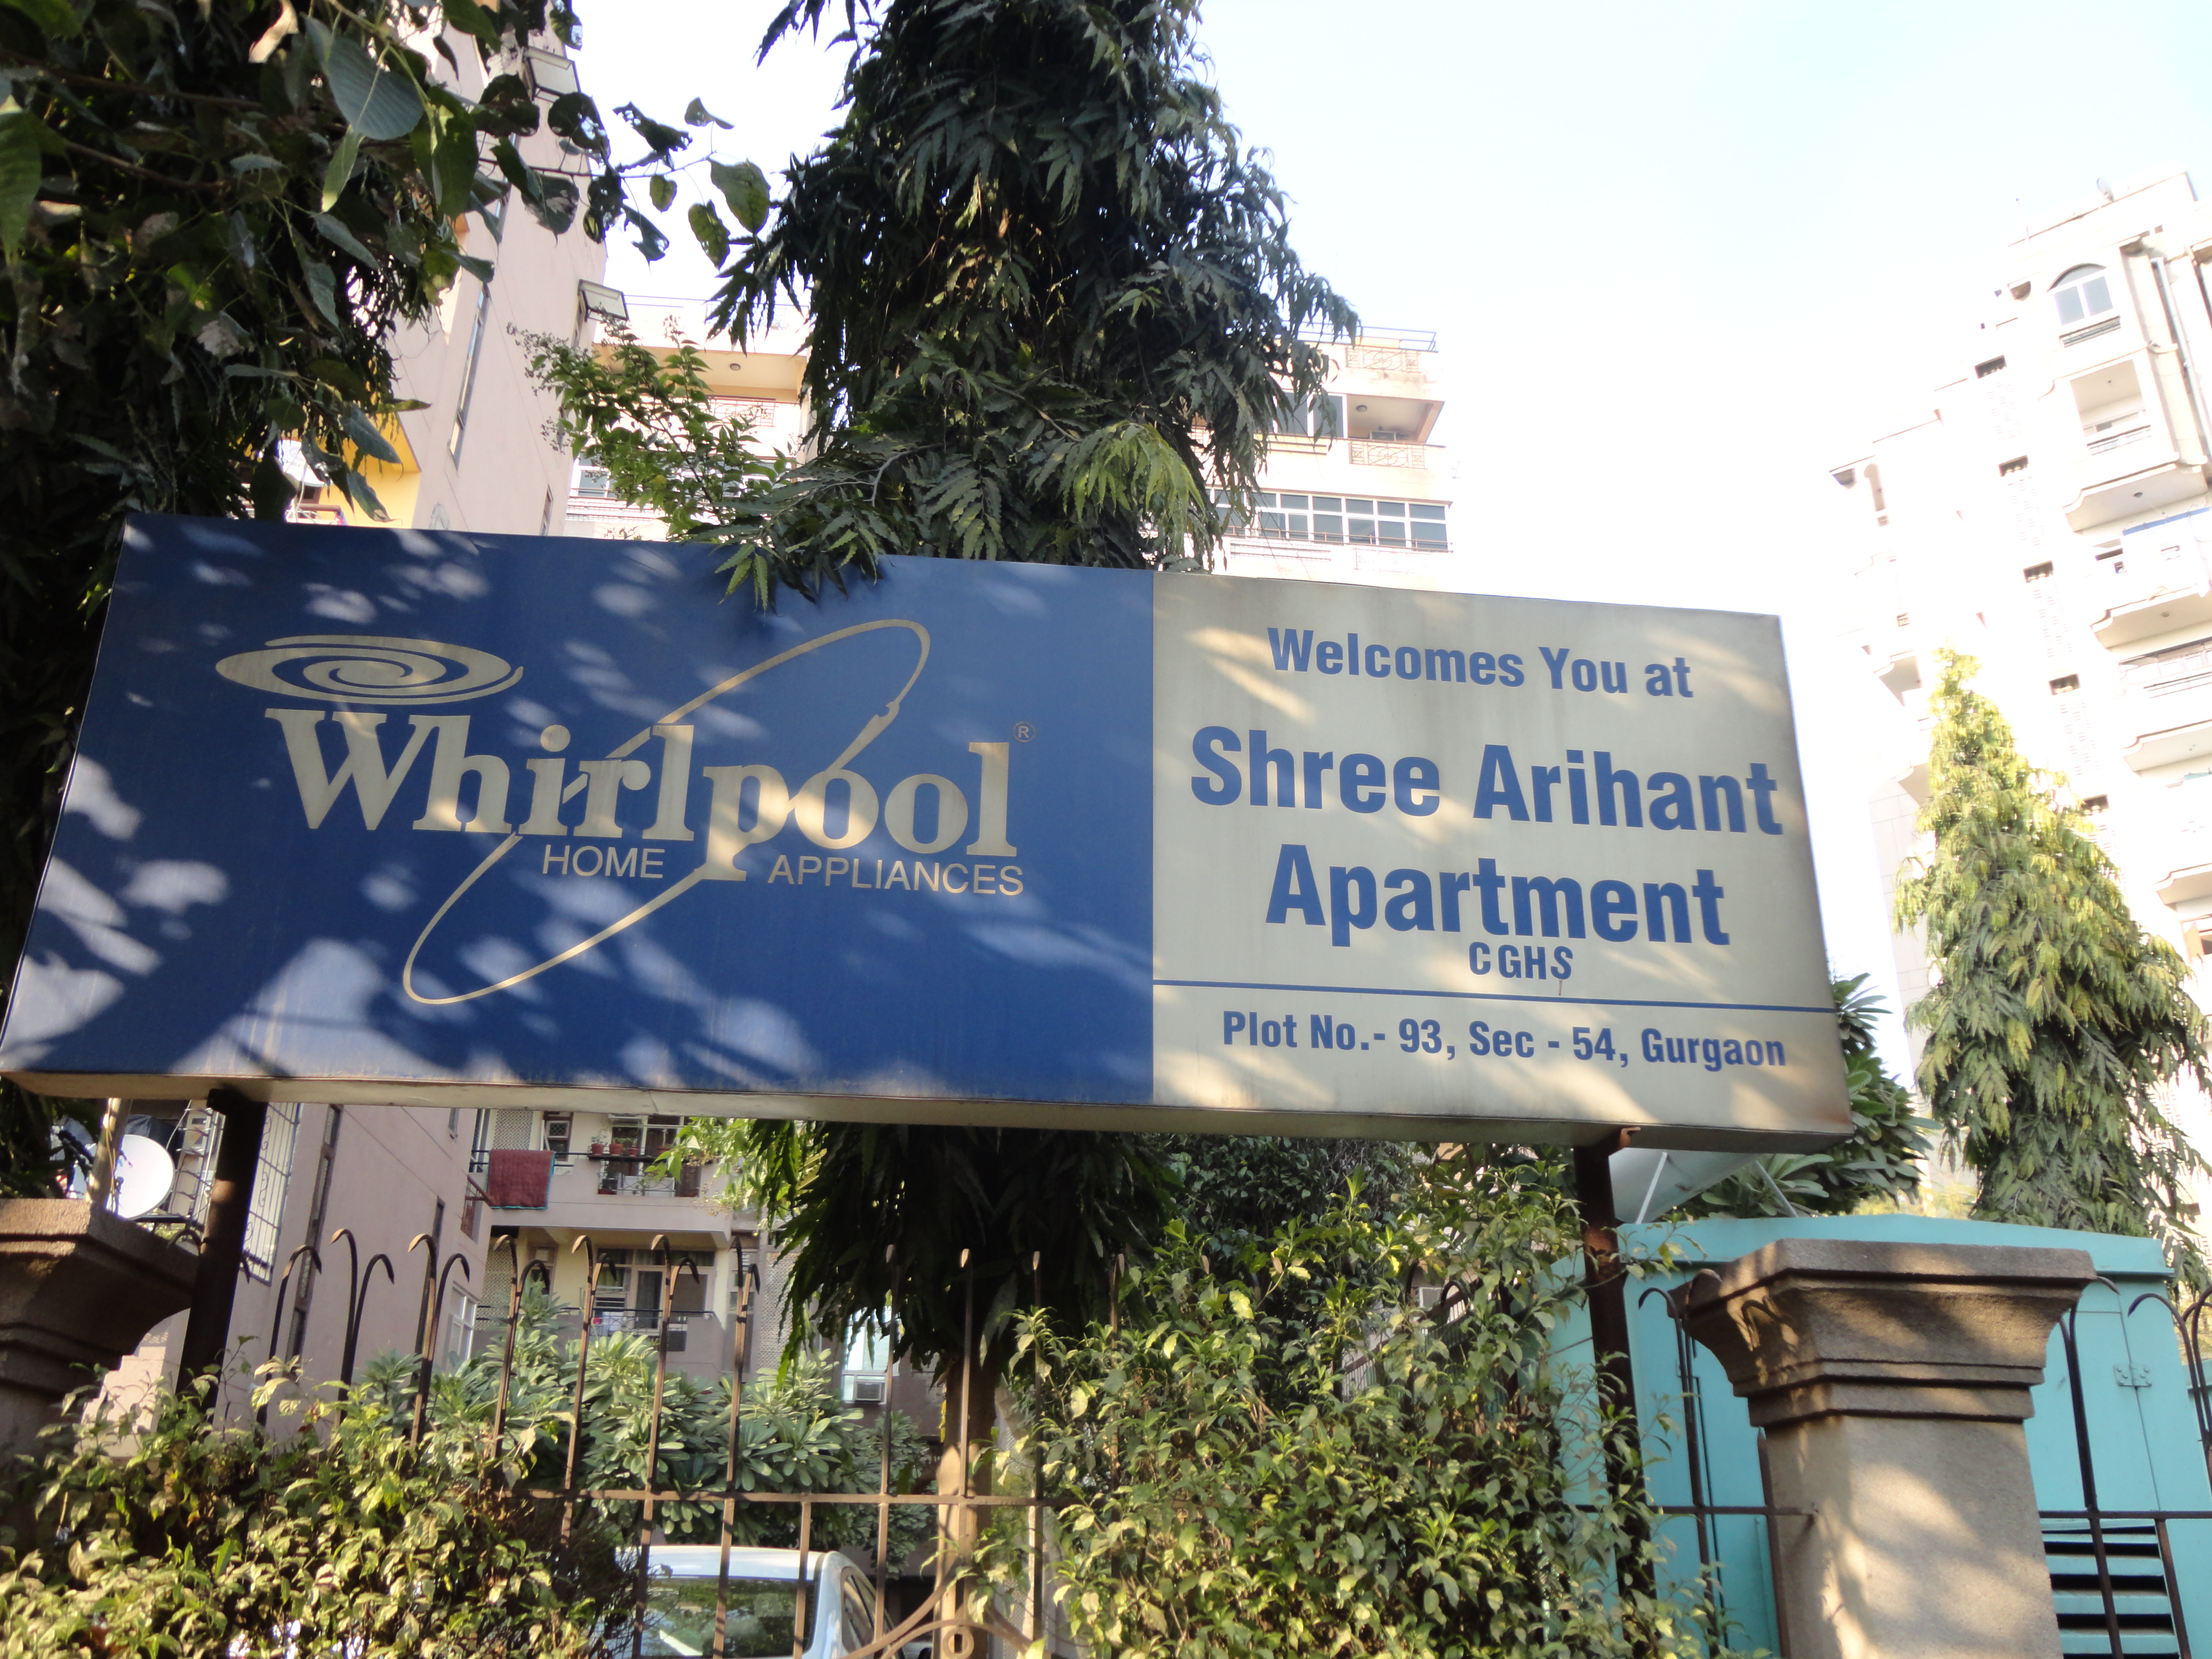 Shree Arihant Apartments Project Deails